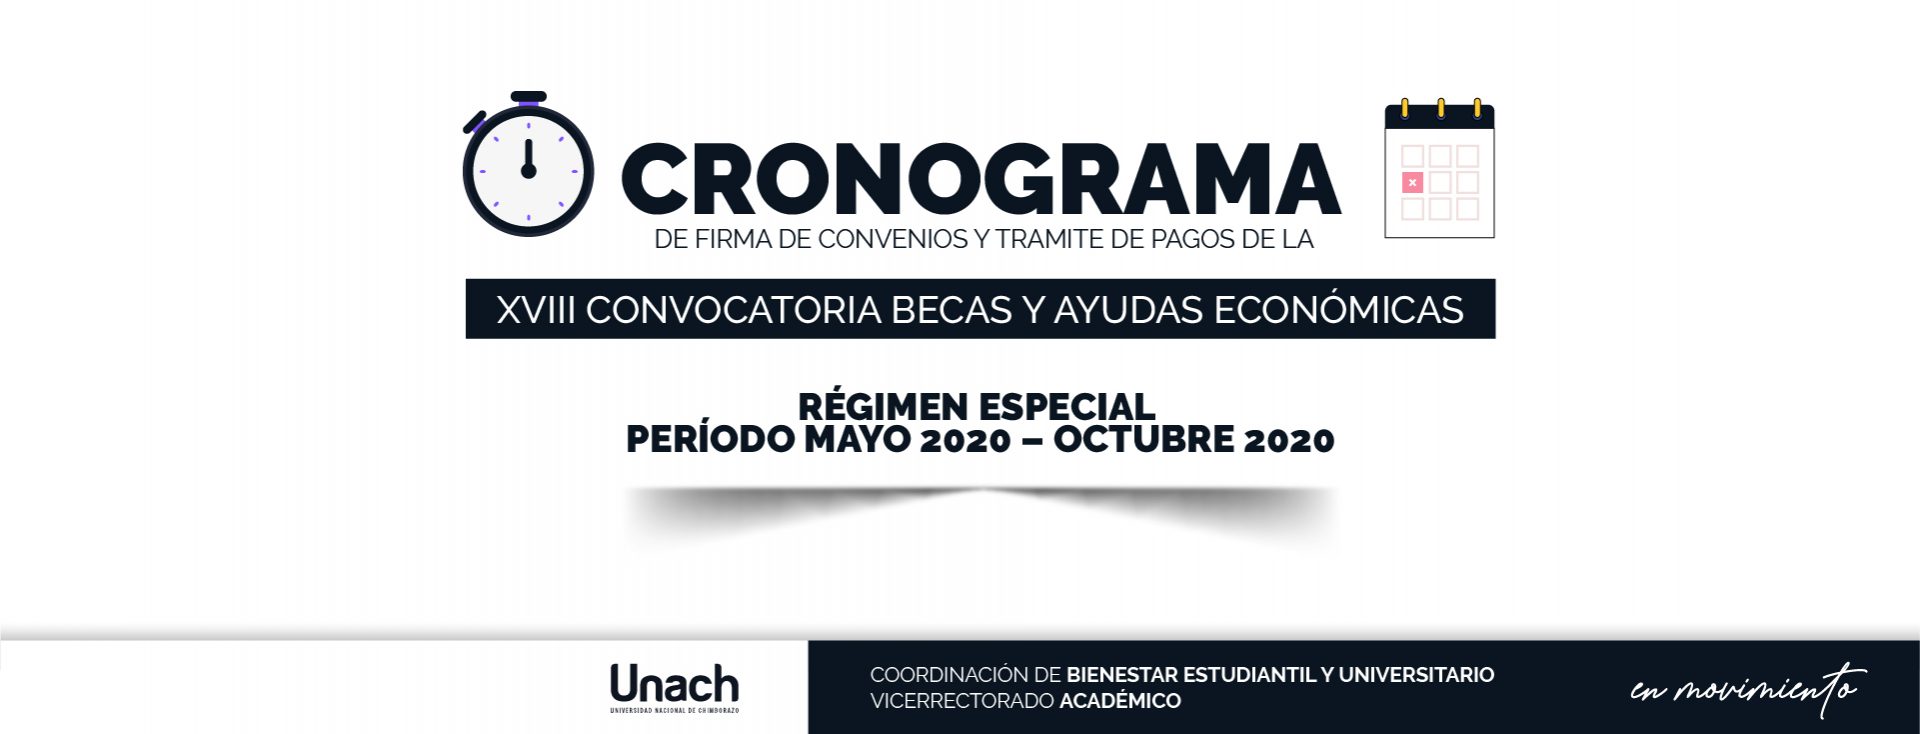 CRONOGRAMA DE FIRMA DE CONVENIOS Y TRÁMITES DE PAGOS DE LA XVIII CONVOCATORIA BECAS Y AYUDAS ECONÓMICAS